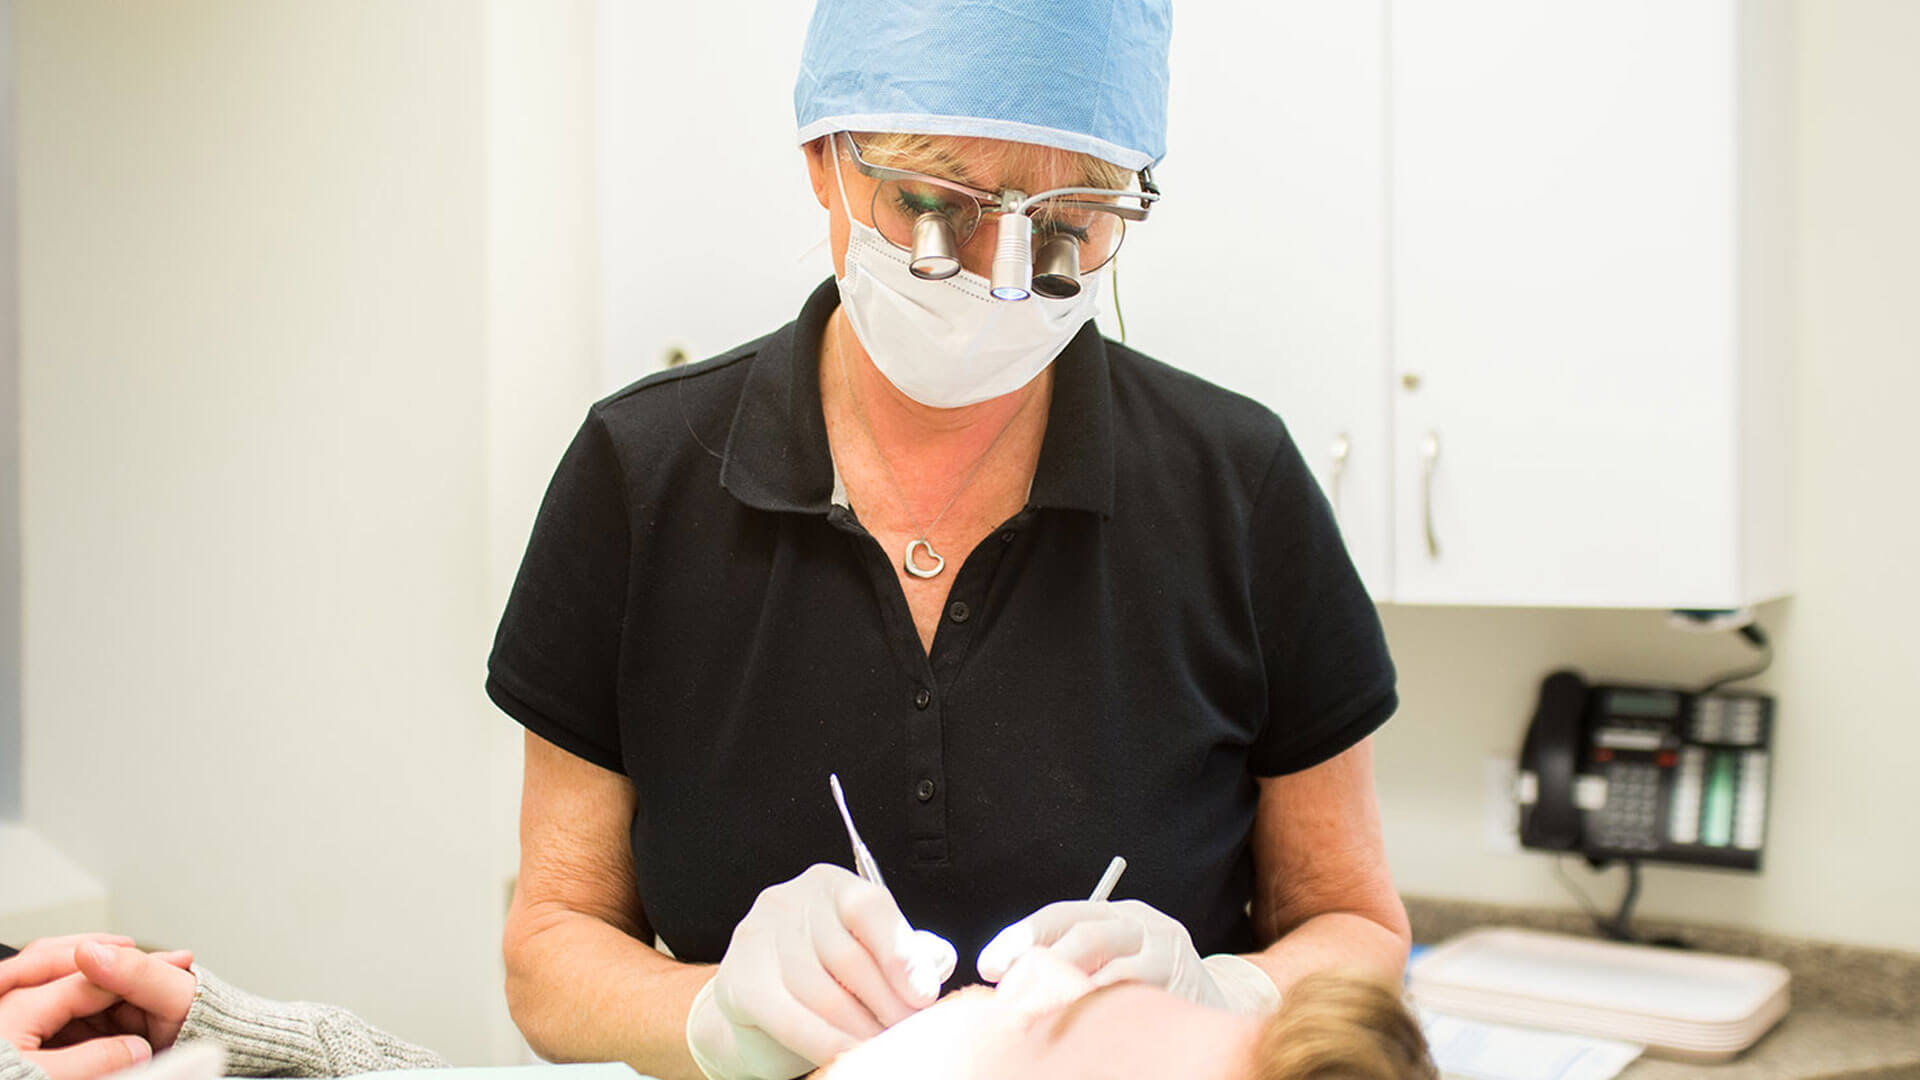 Oakville Dental Implants, Digital Dental Implant Planning and Dental Implant Surgery